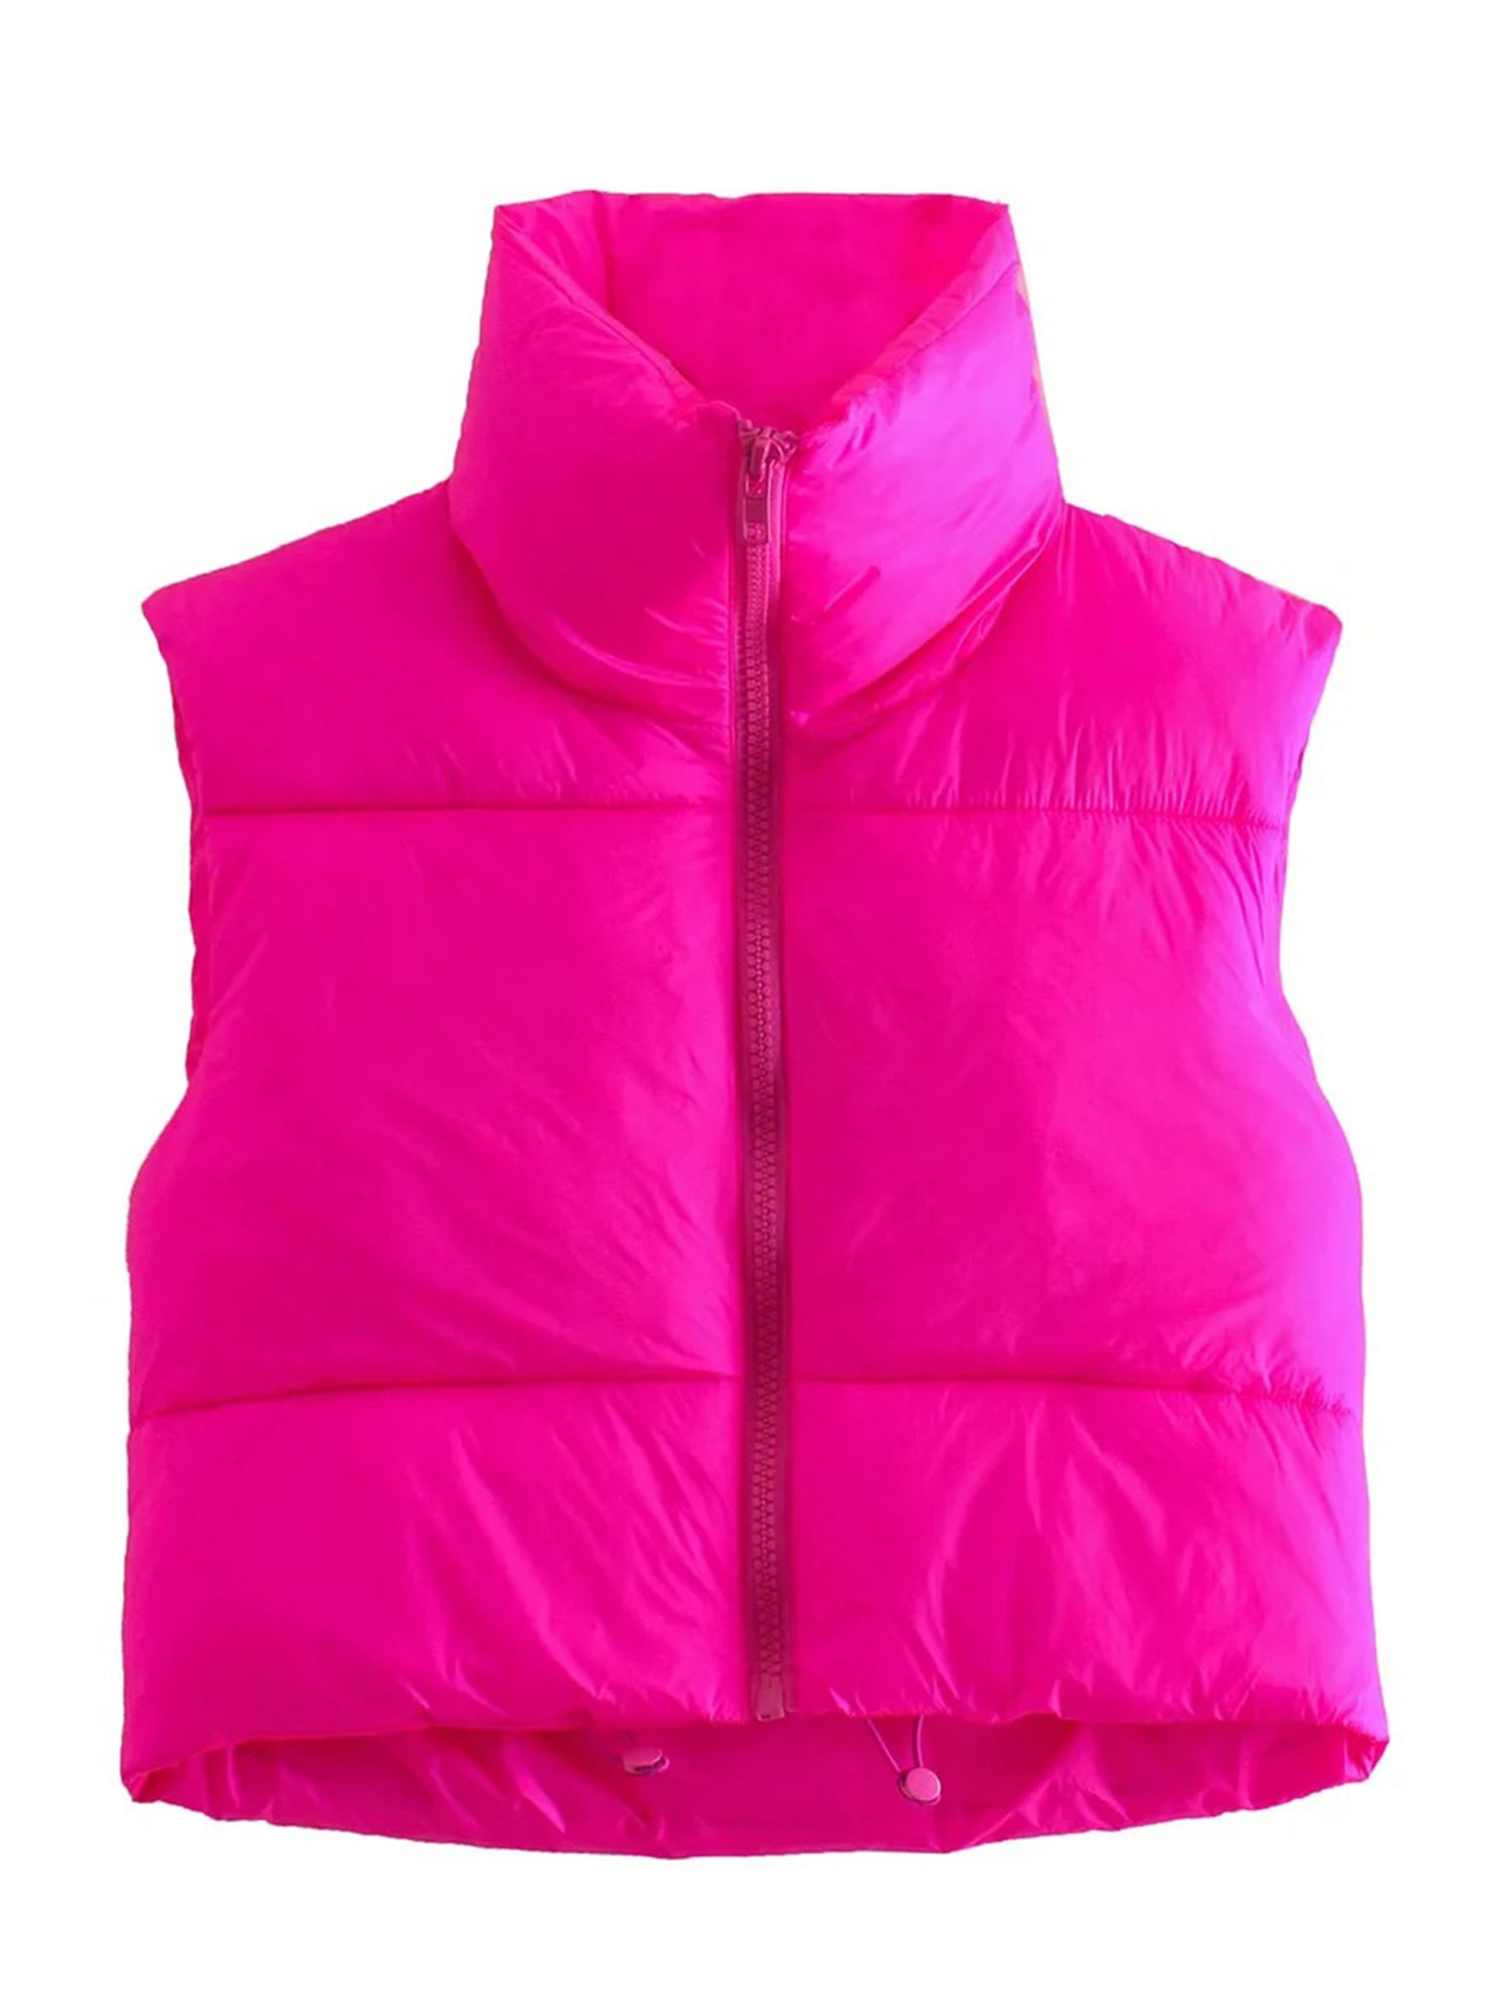 AMILIEe Women Winter Short Vest Lightweight Sleeveless Warm Outerwear ...